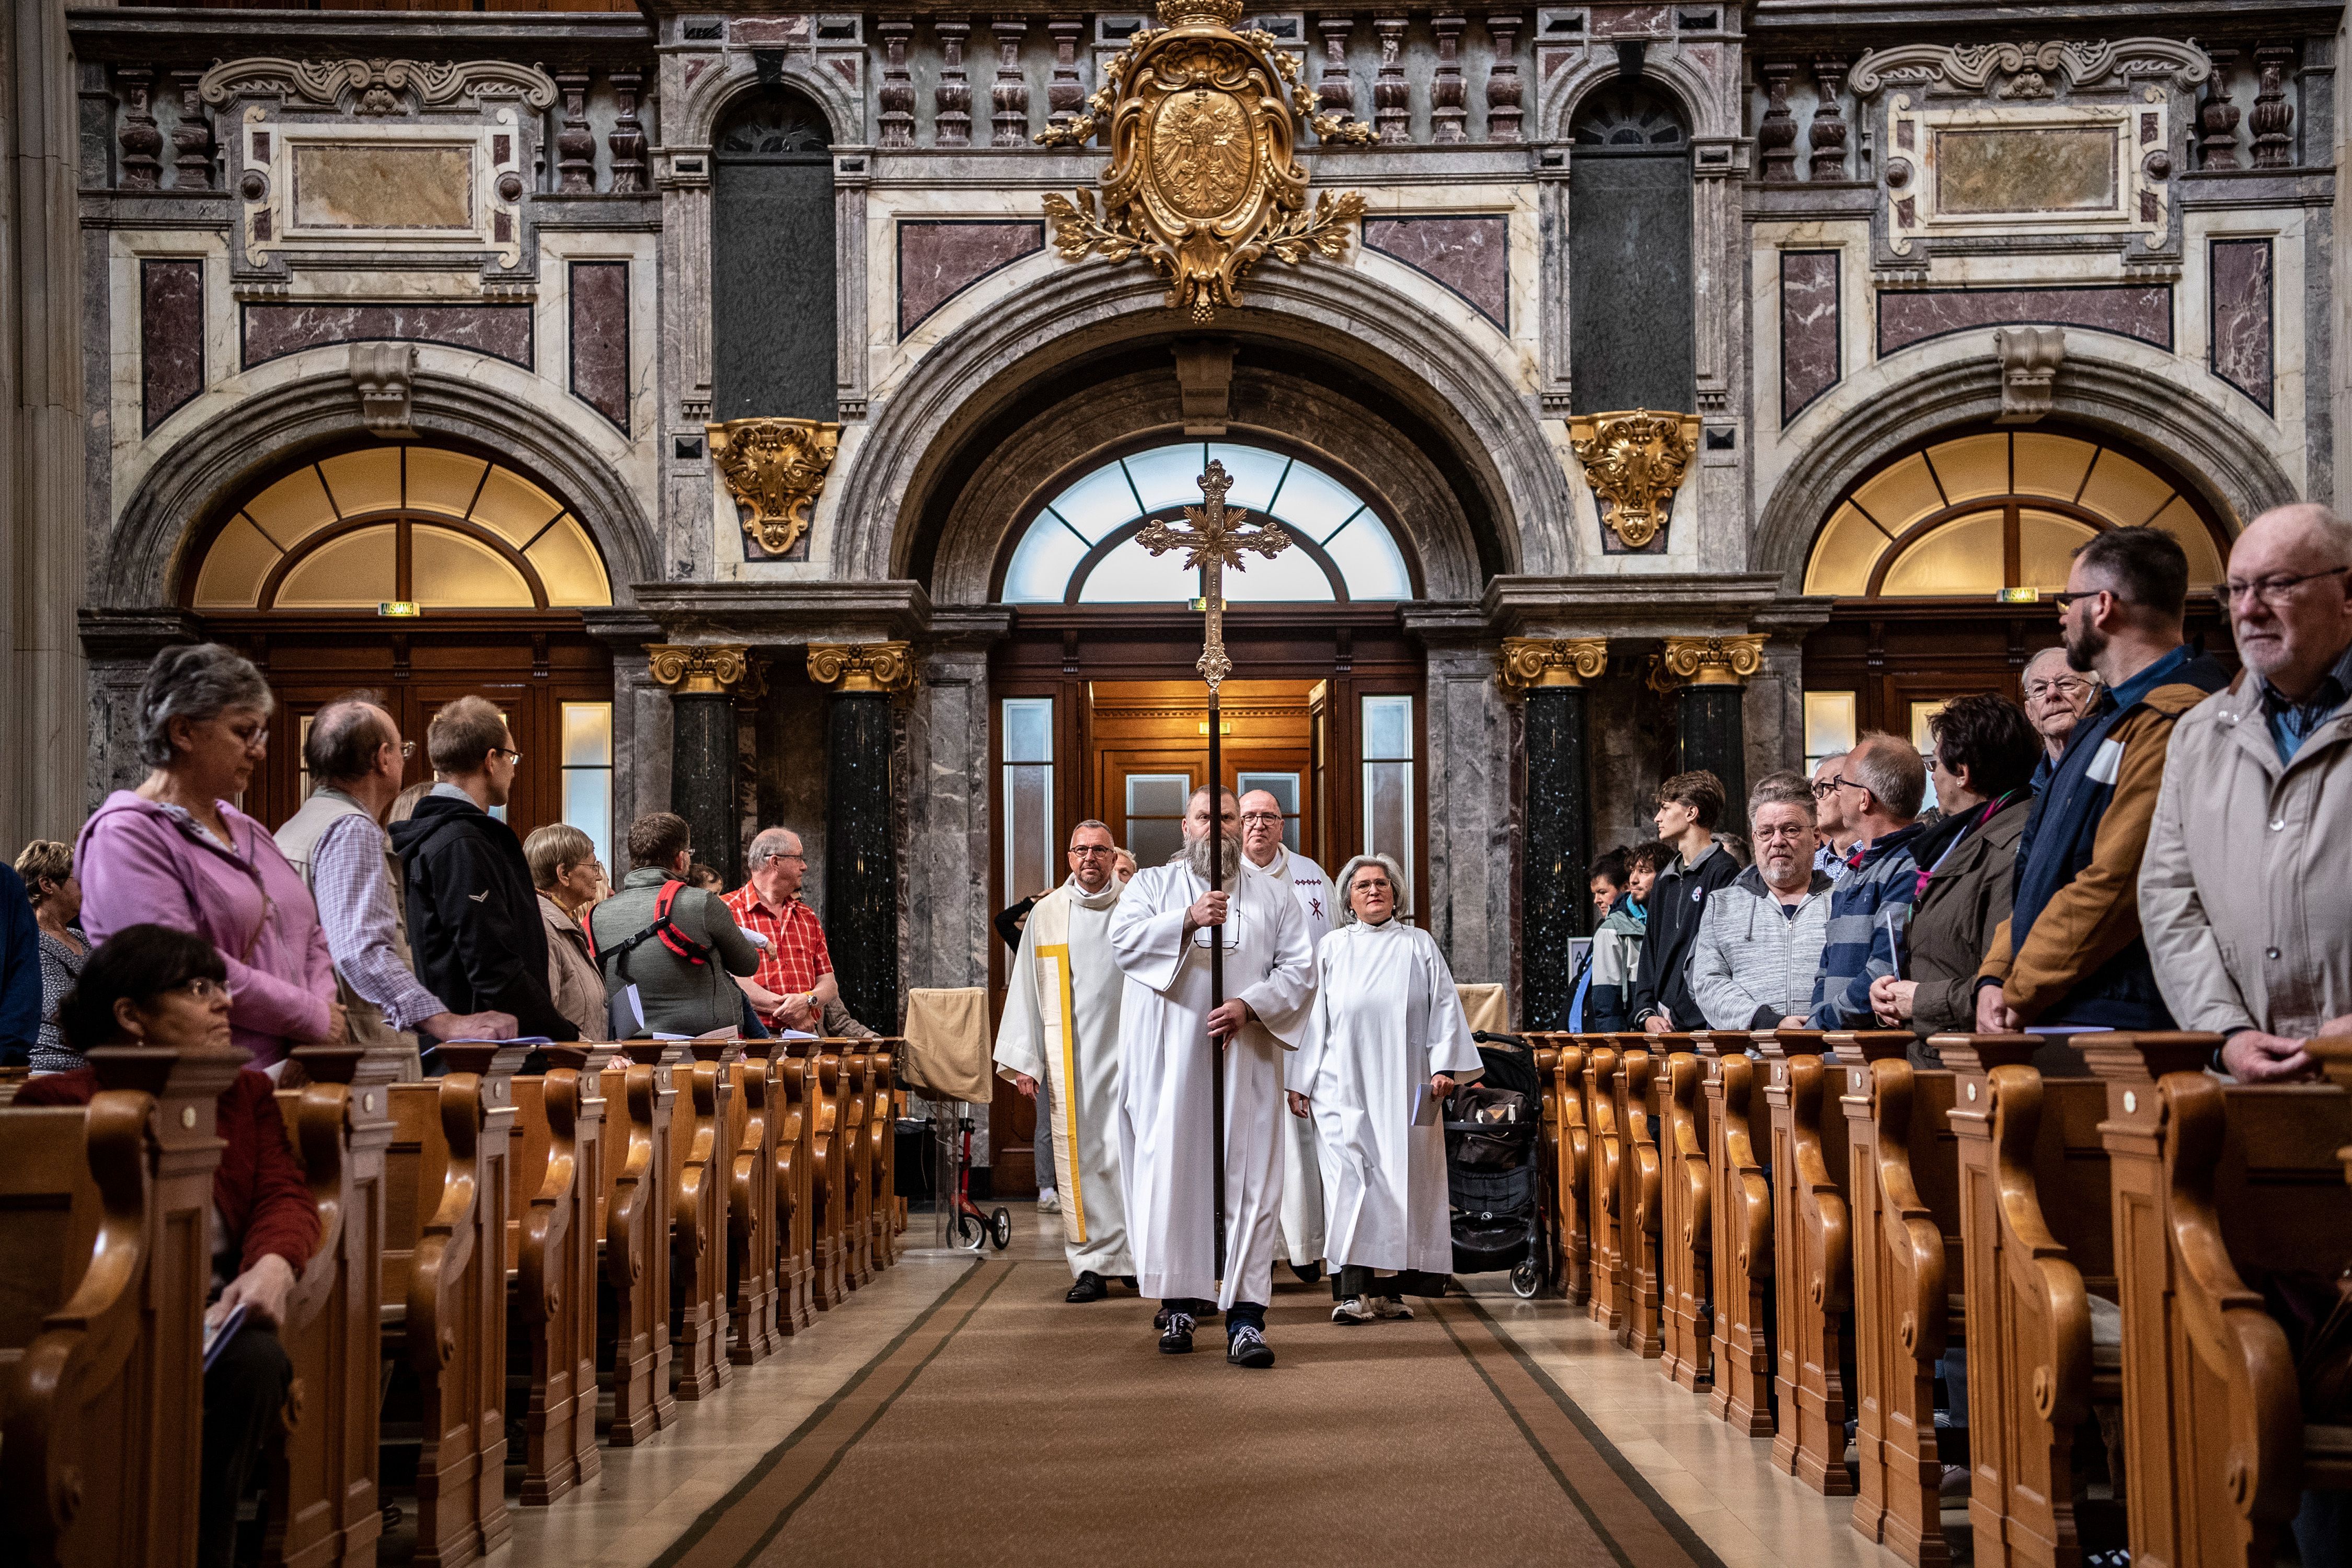 An Christi Himmelfahrt trägt der Priester in der Messe ein weißes Gewand als Symbol des österlichen Lichts.